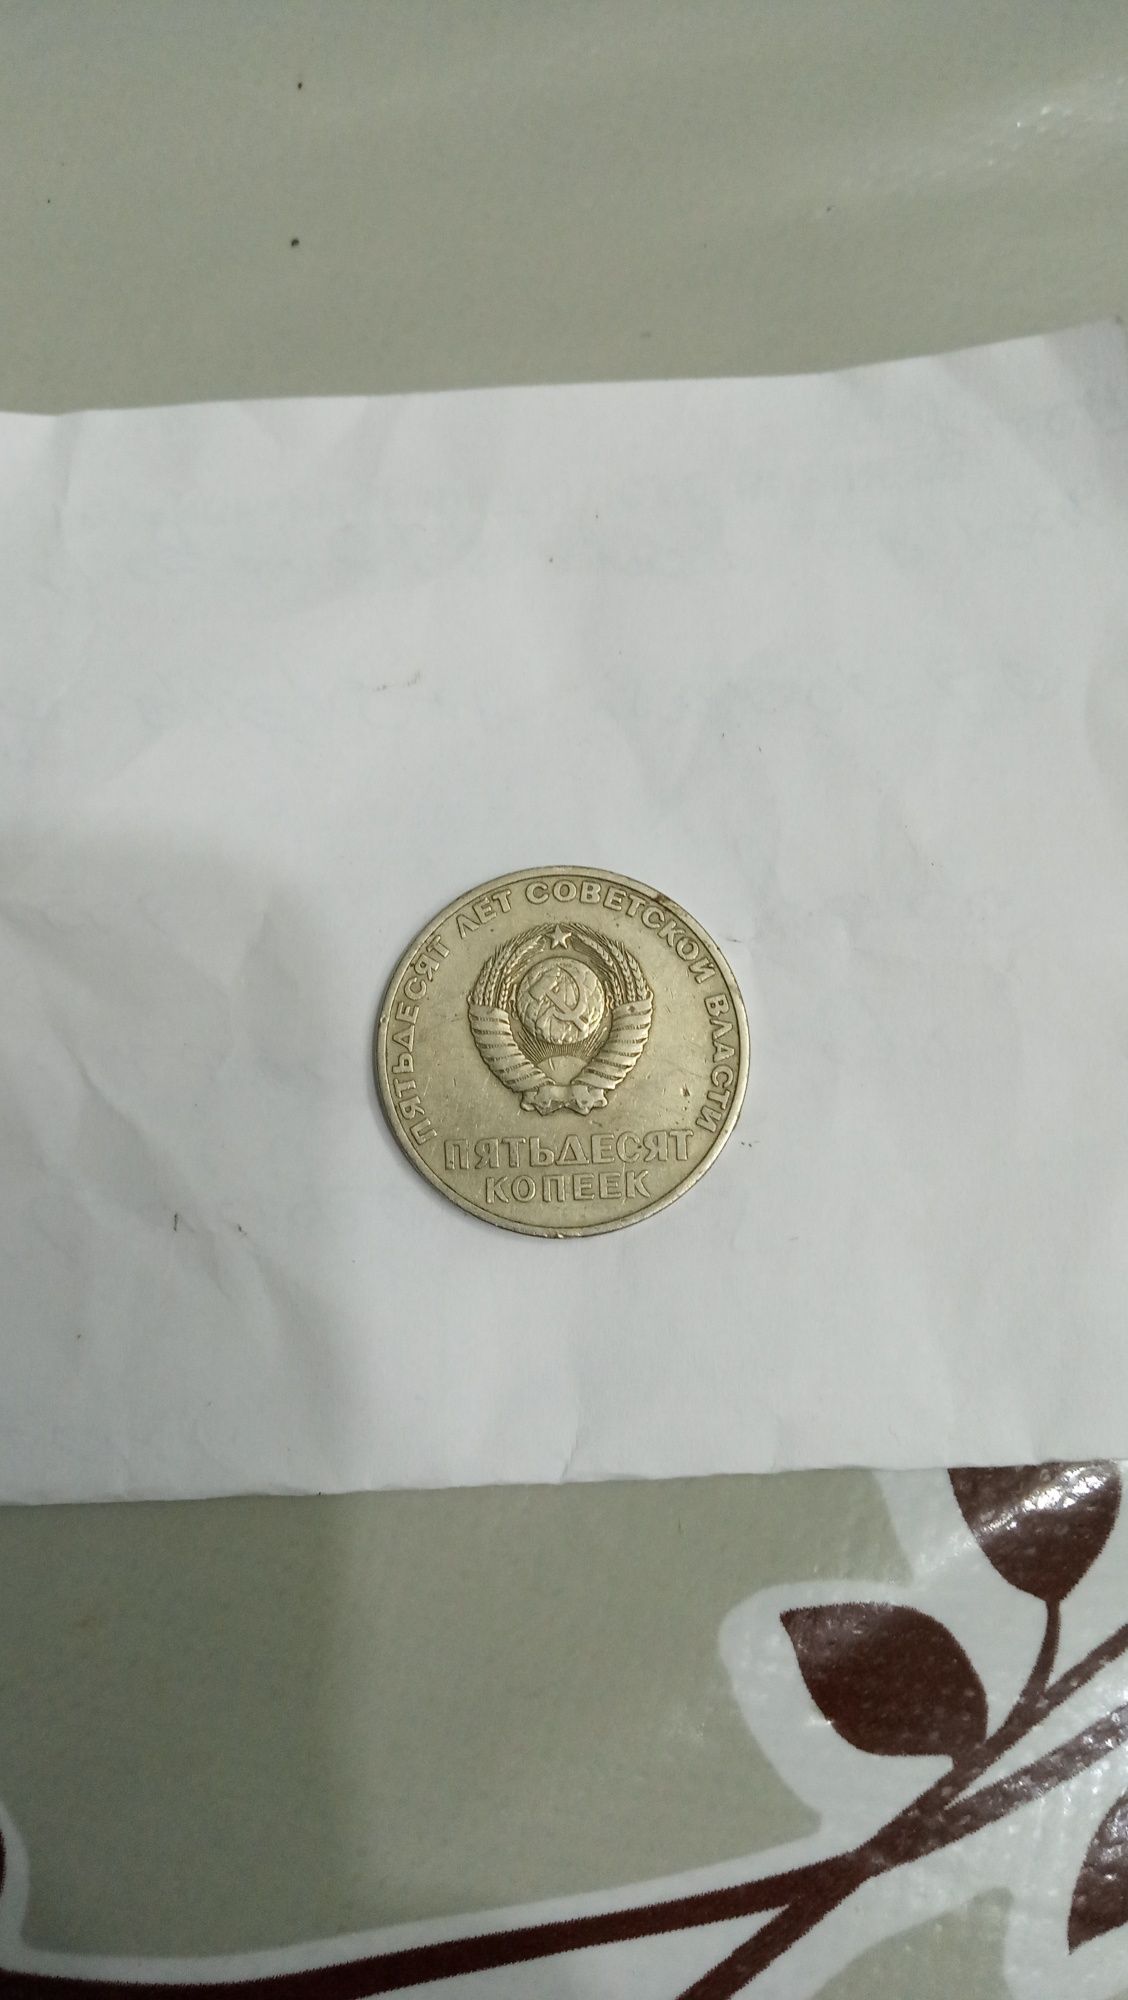 Монеты 1 рубль и 50 копеек